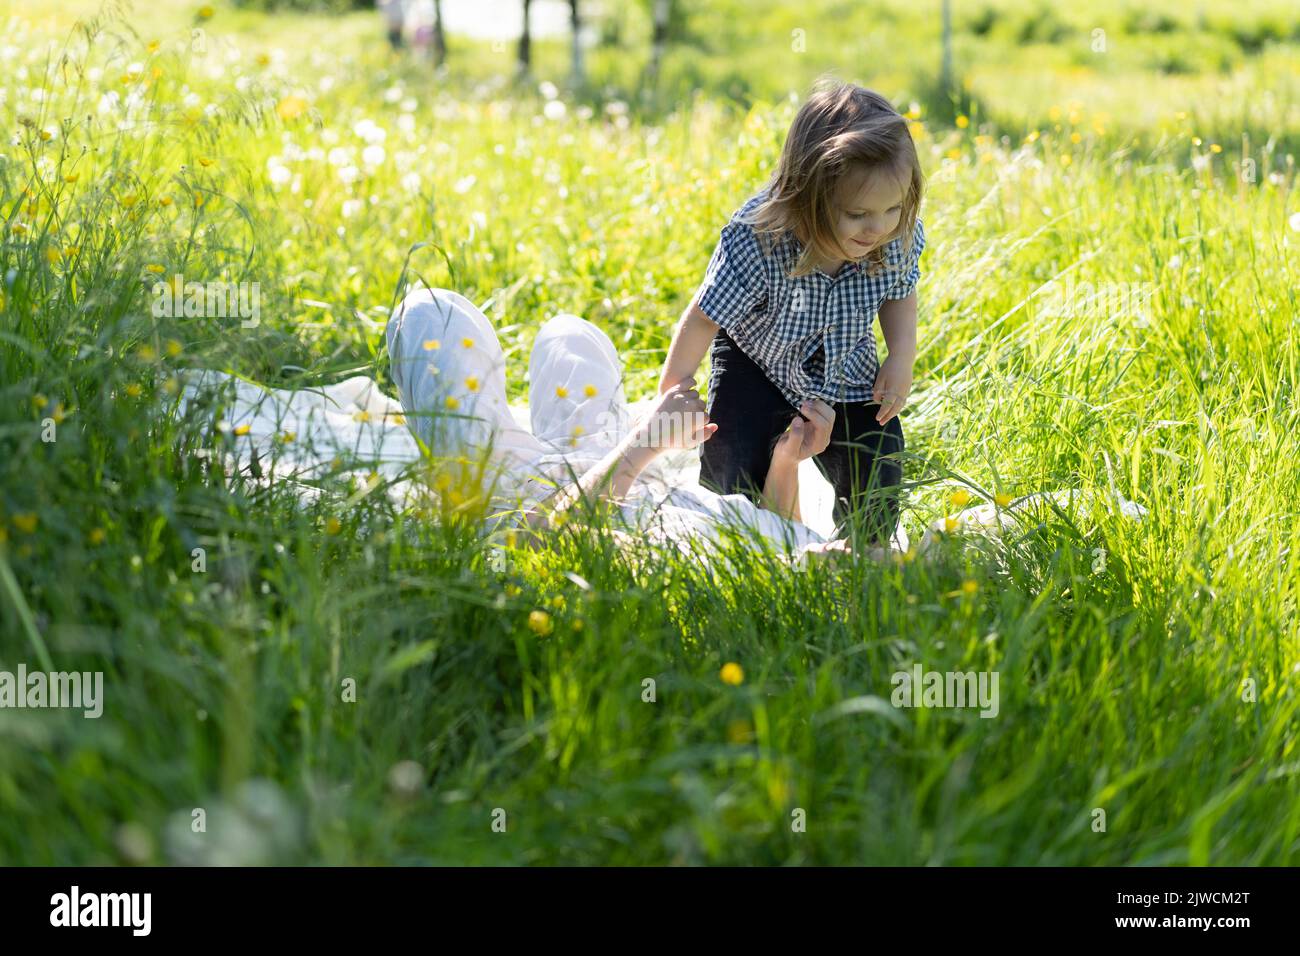 Bruder und Schwester laufen glücklich und lachen auf dem grünen Gras. Die Sonne scheint, die Kinder tanzen sorglos. Das Konzept eines glücklichen Familienlebens und der Bindung. Lifestyle. Stockfoto